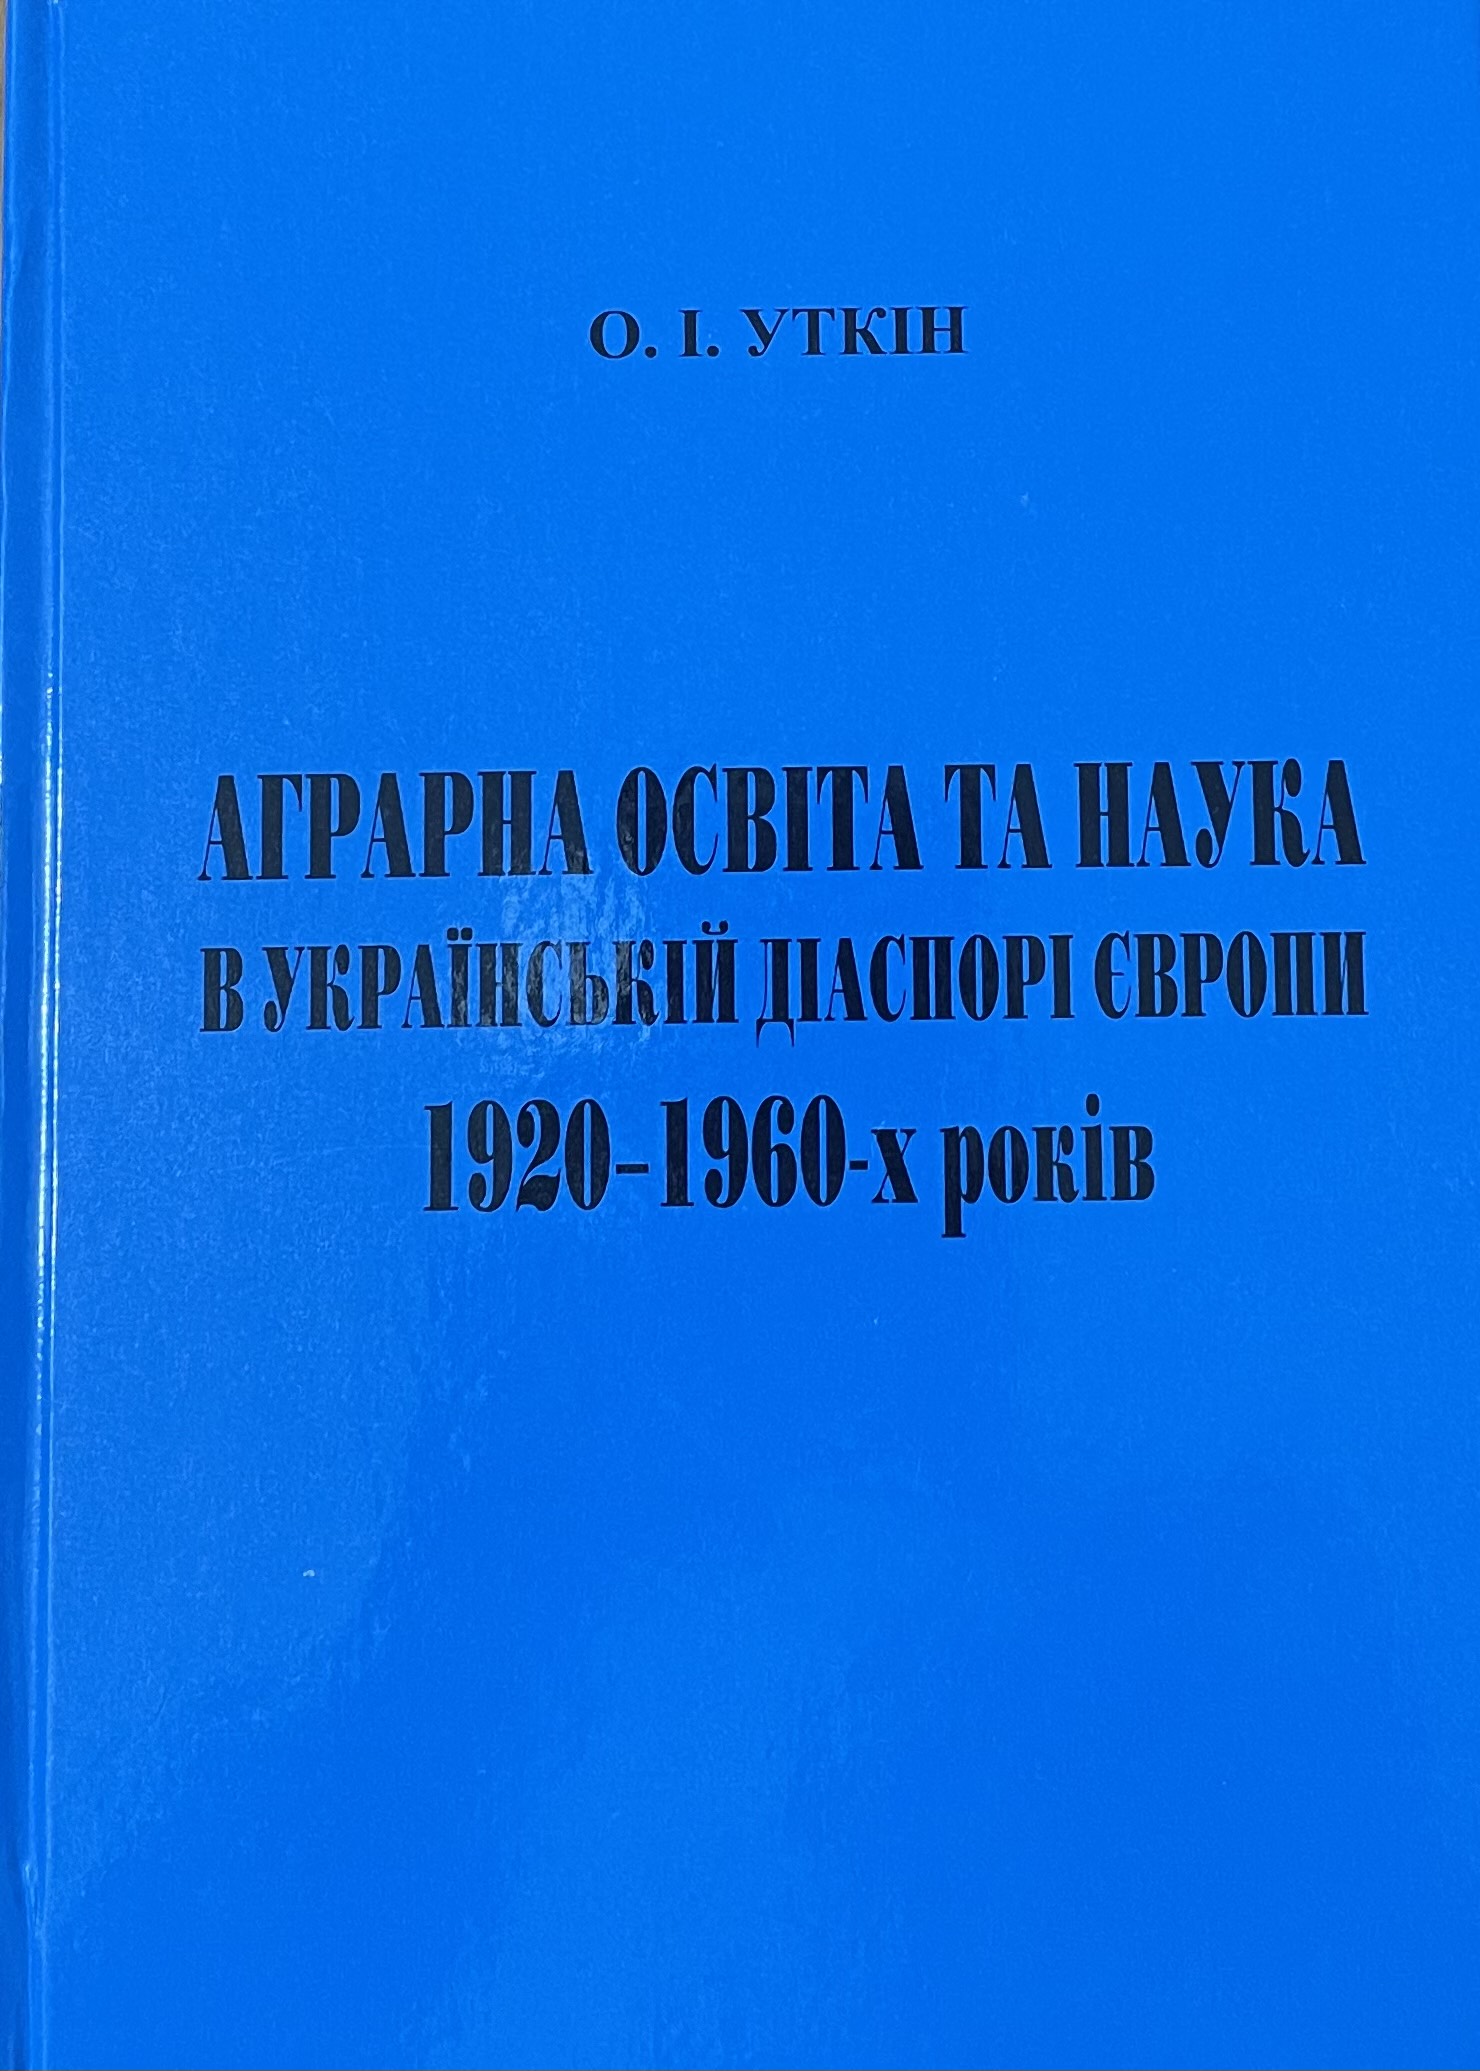 Уткін О. І. Аграрна освіта та наука в українській діаспорі Європи 1920-1960-х років : монографія